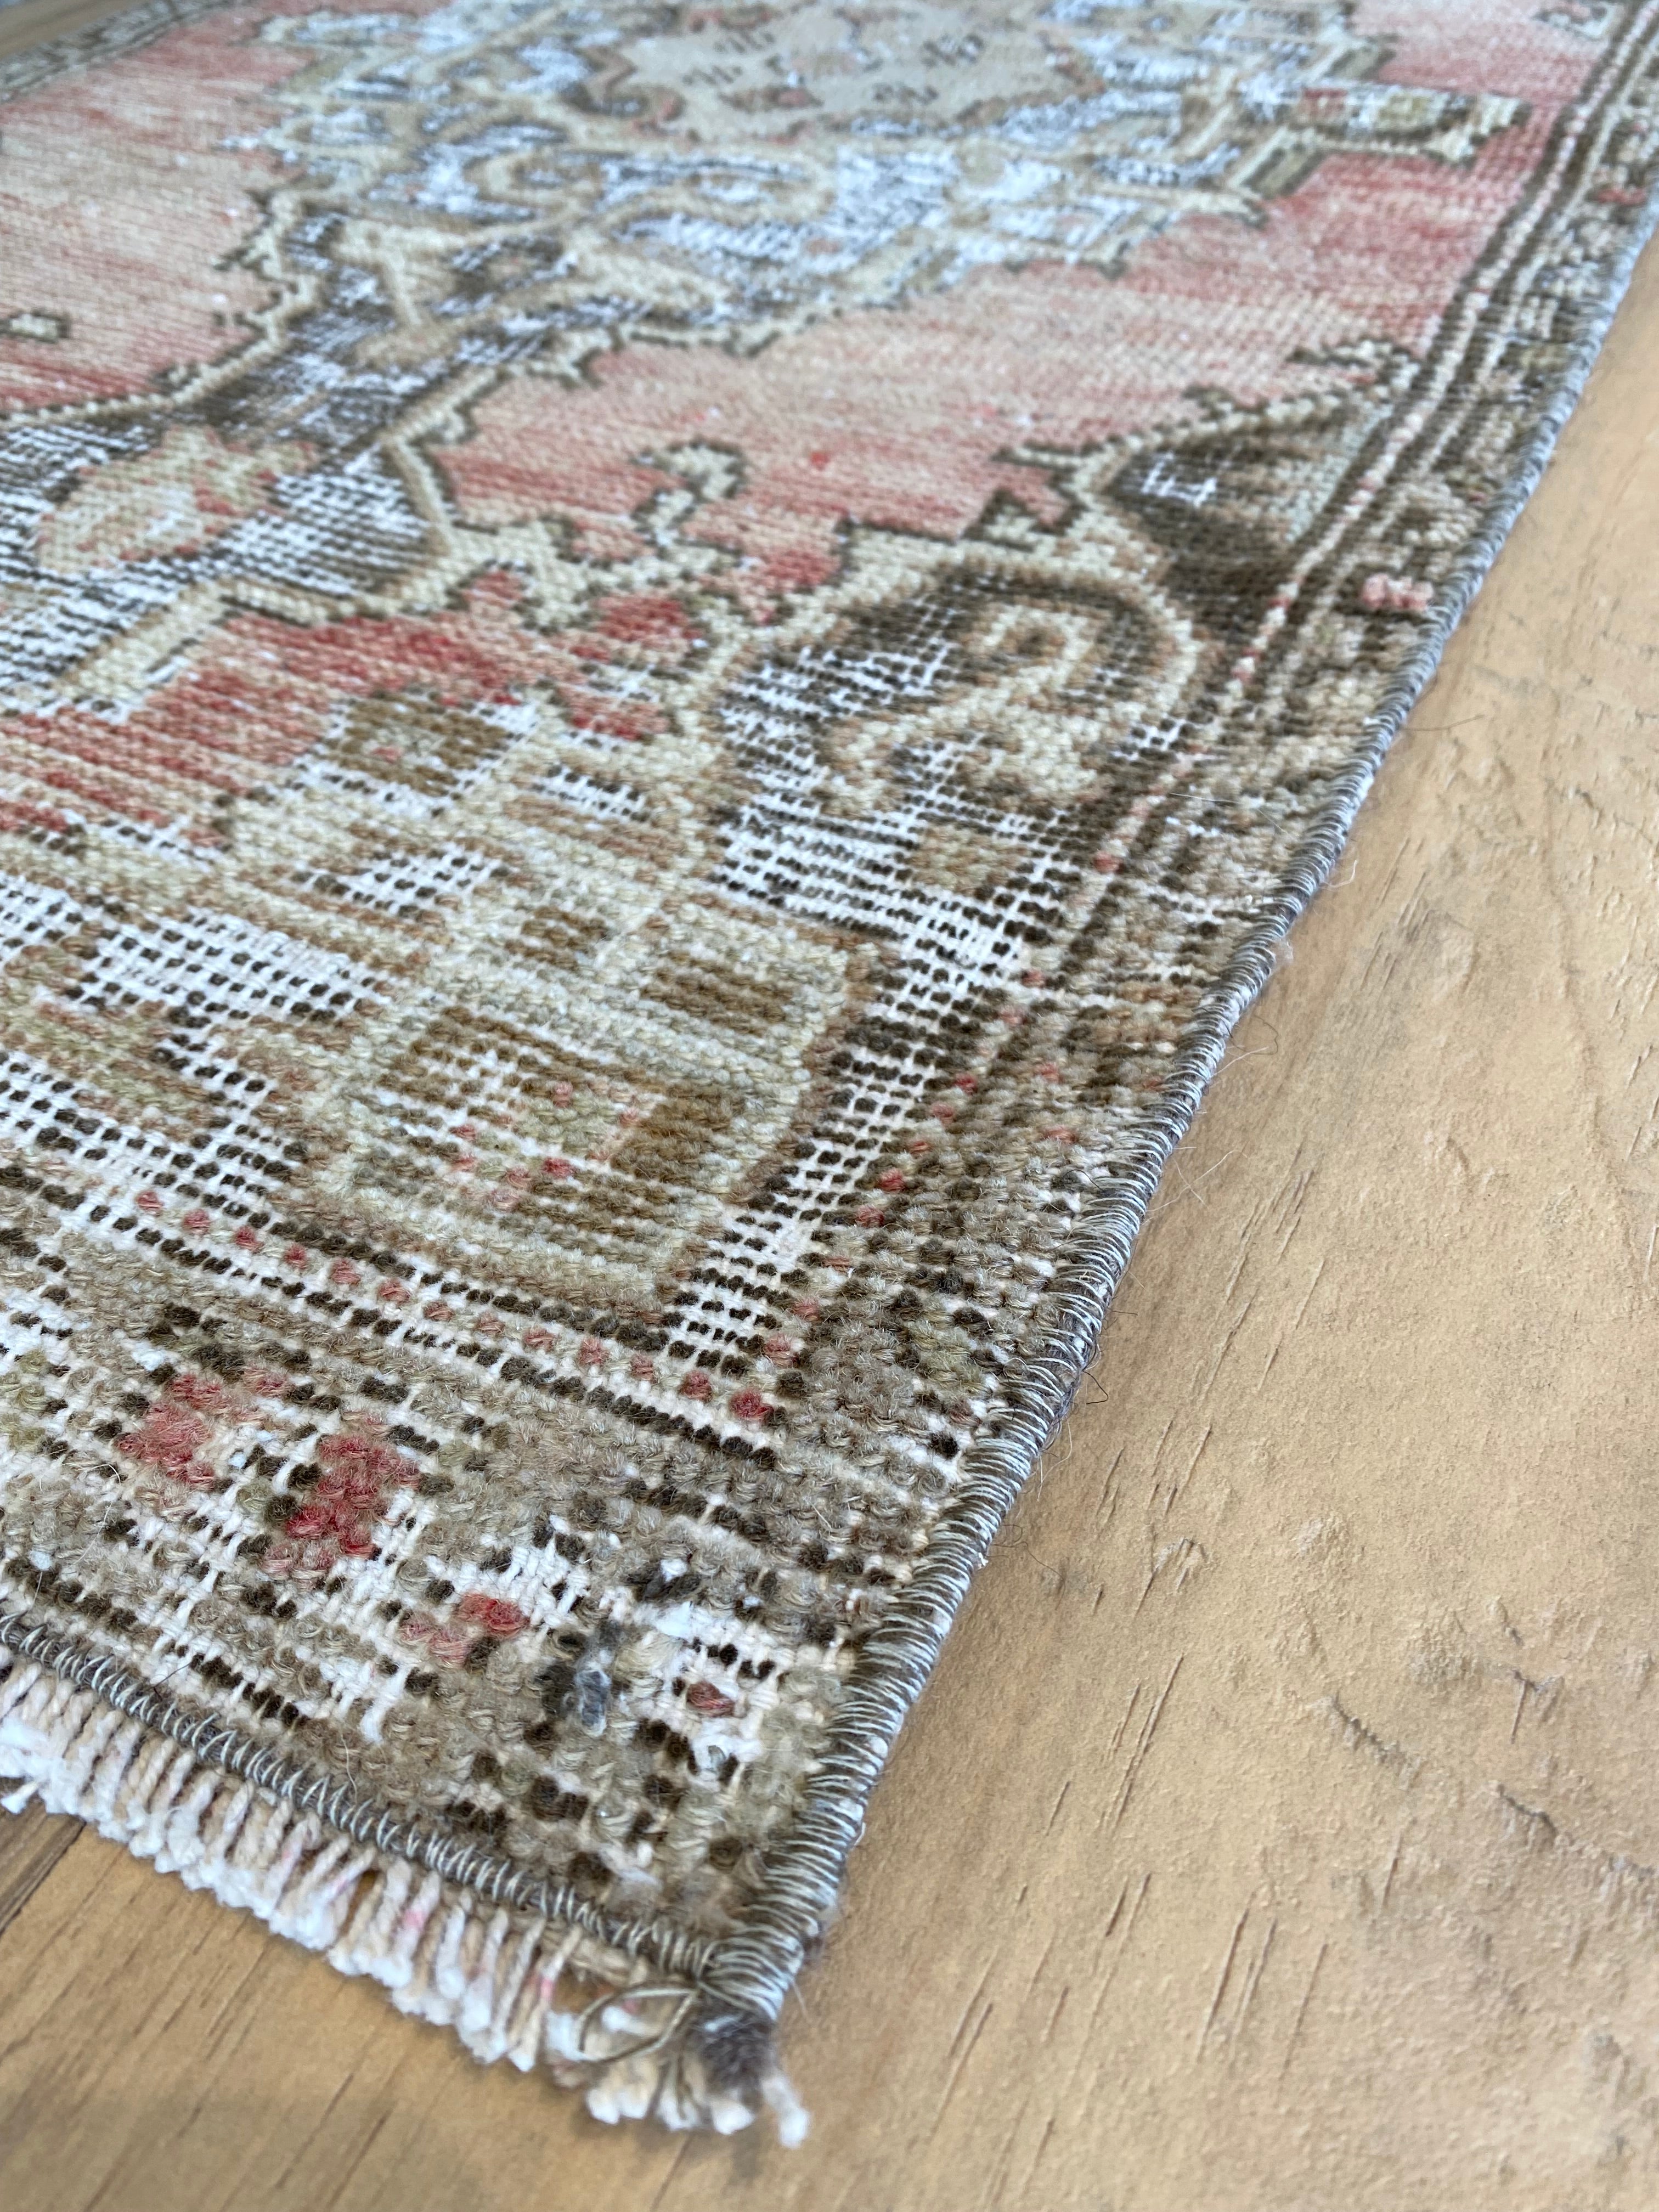 Corner details of the Turkish rug with fringe detail. 